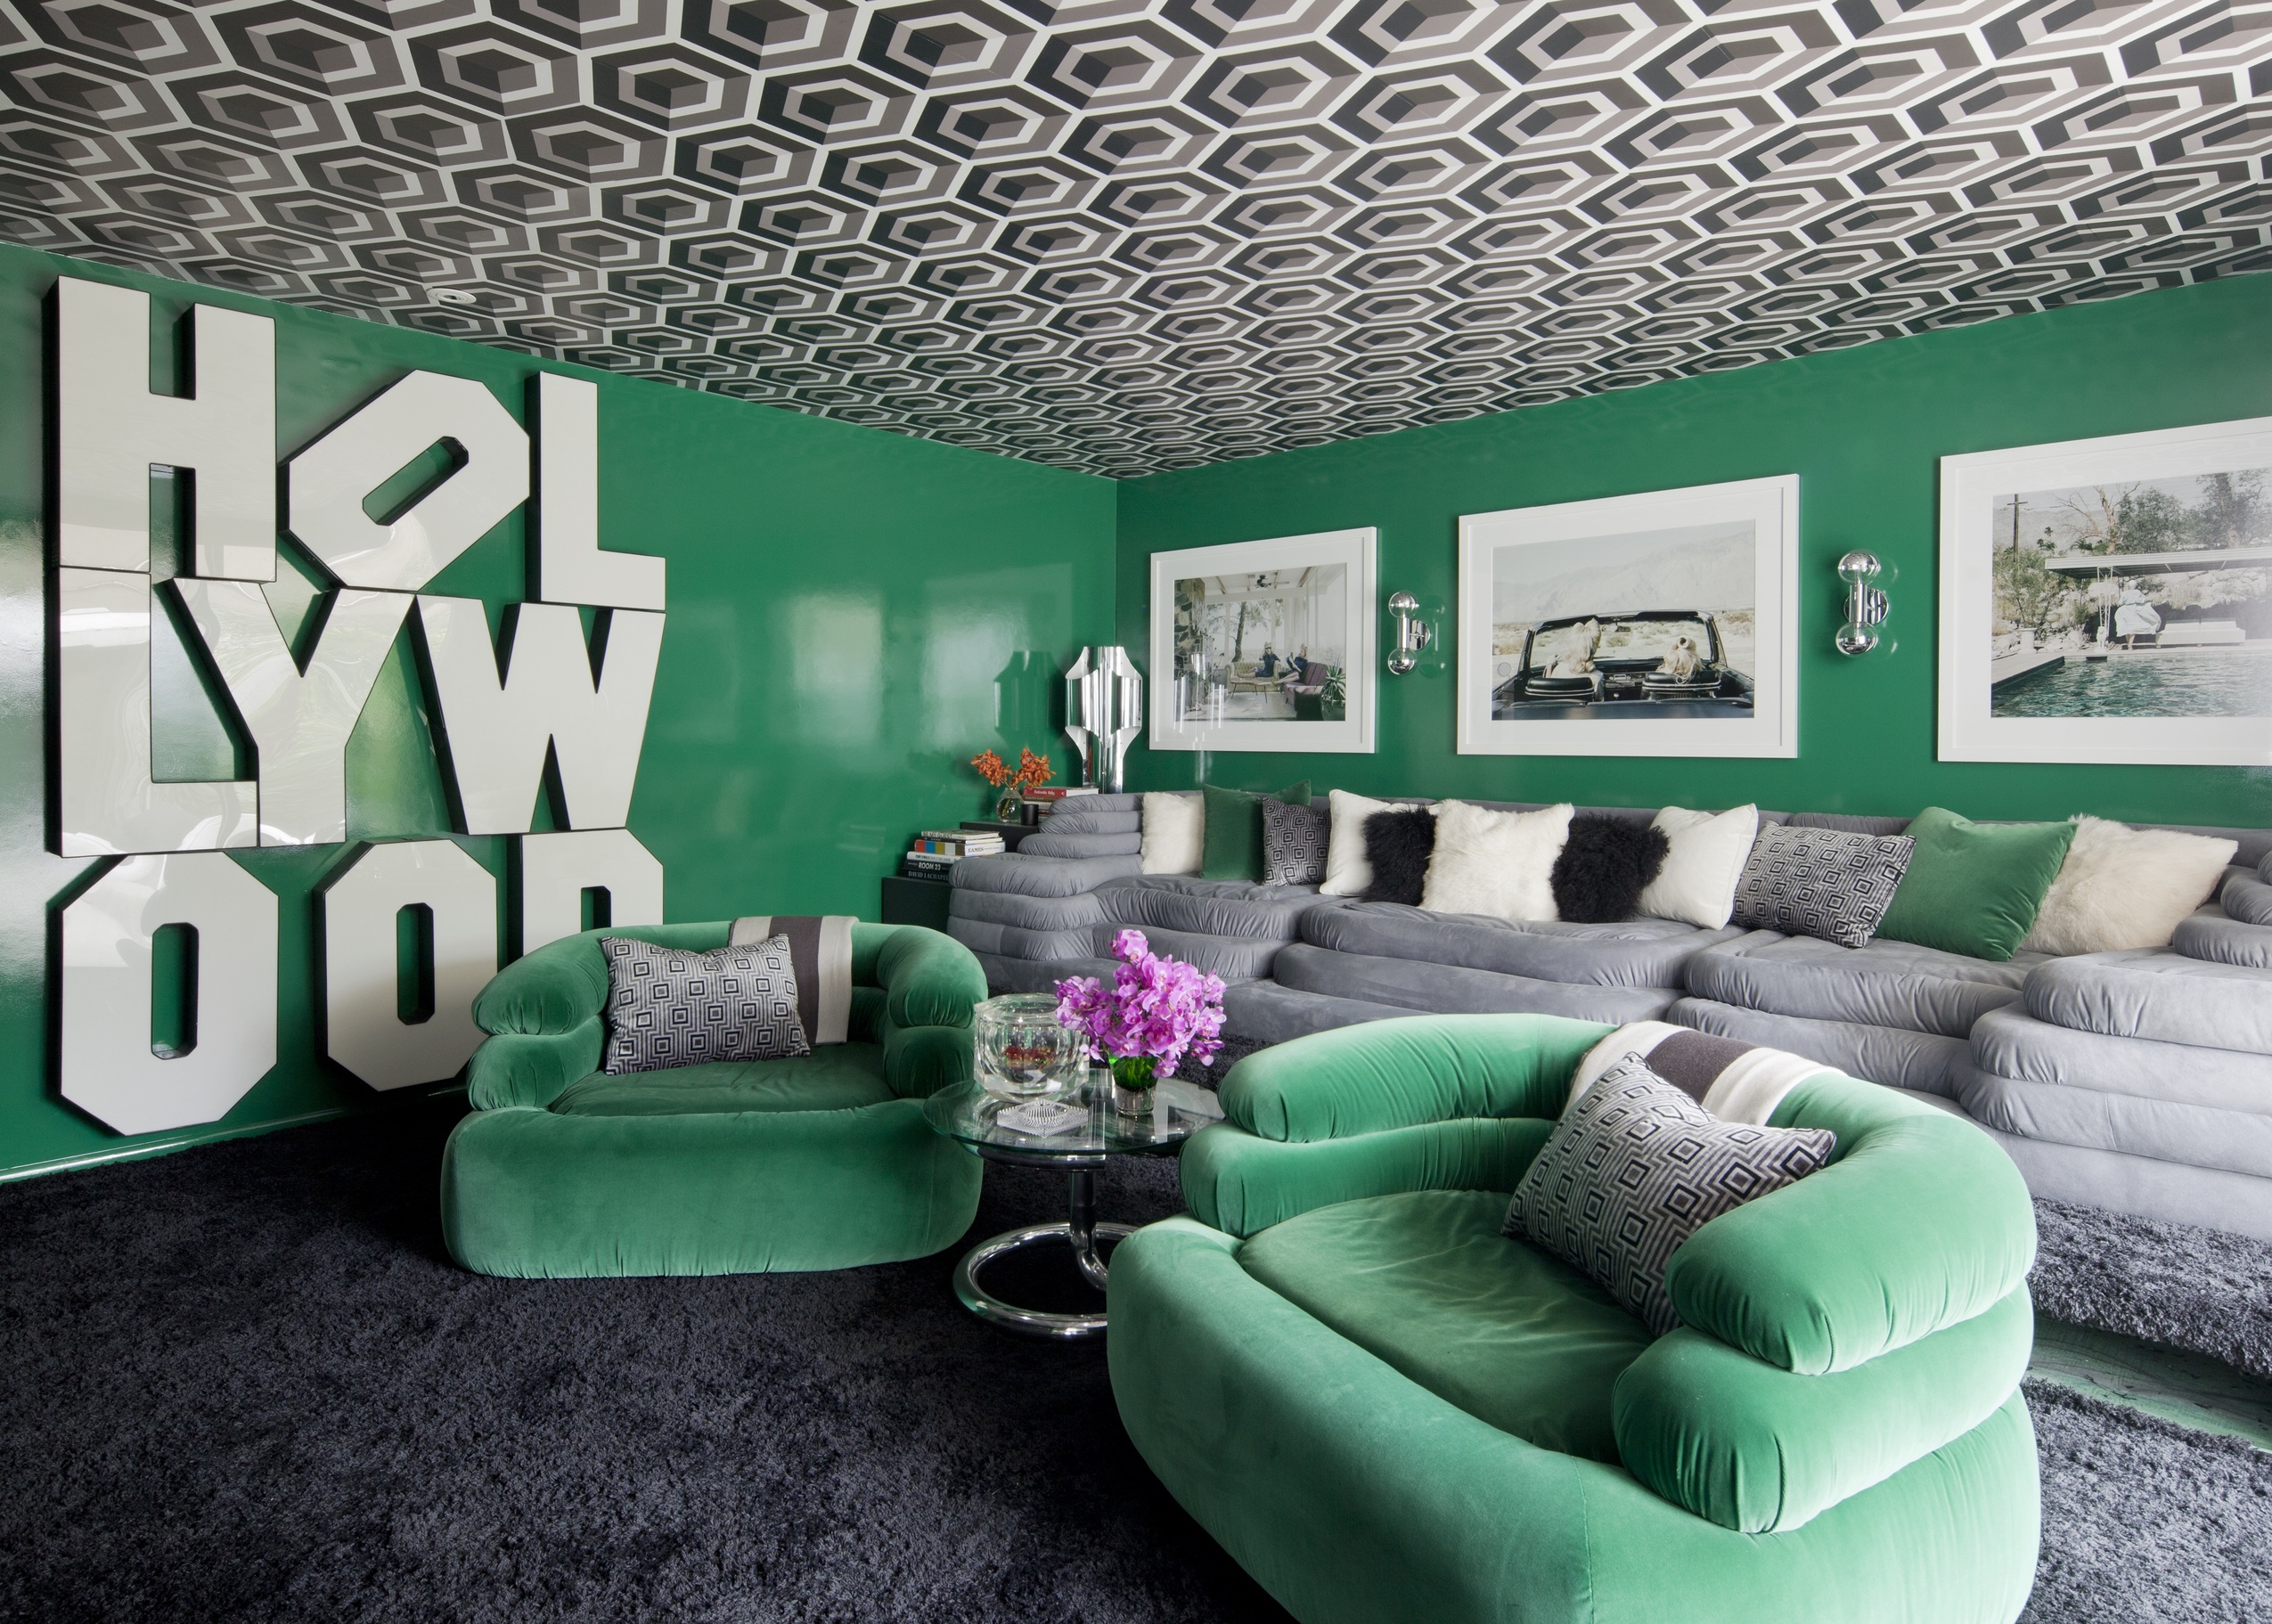 大膽採用高光的翠綠牆壁和同色調弧形天鵝絨座椅，與立體幾何圖案天花板相映成趣，將好萊塢電影場景搬回家。